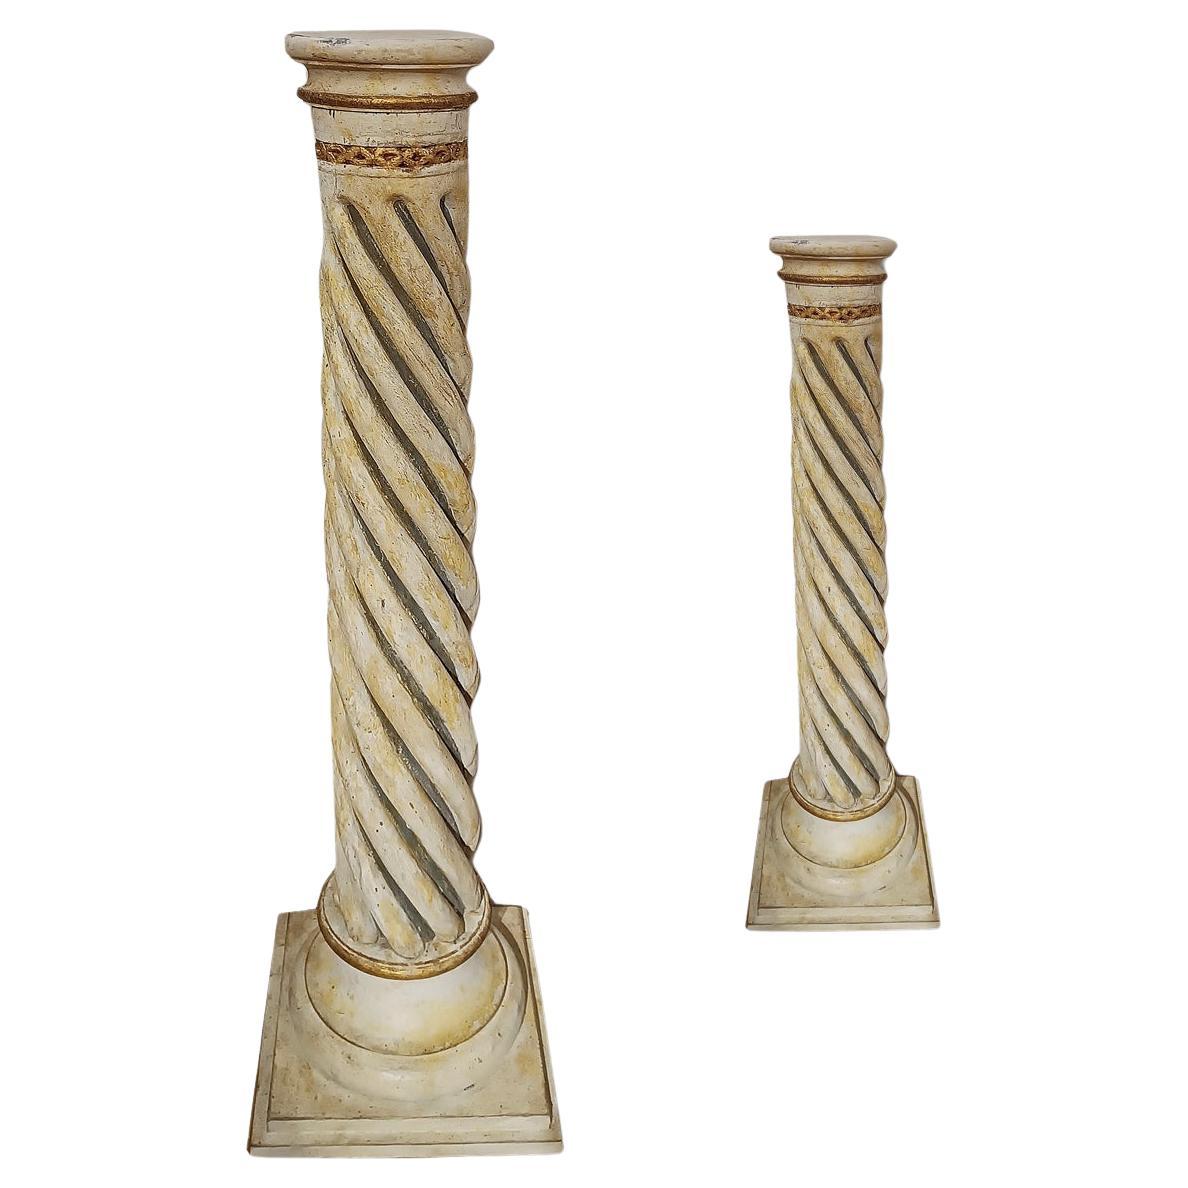 pärchen aus lackiertem Holz des 18. Jahrhunderts mit gedrehten Säulen